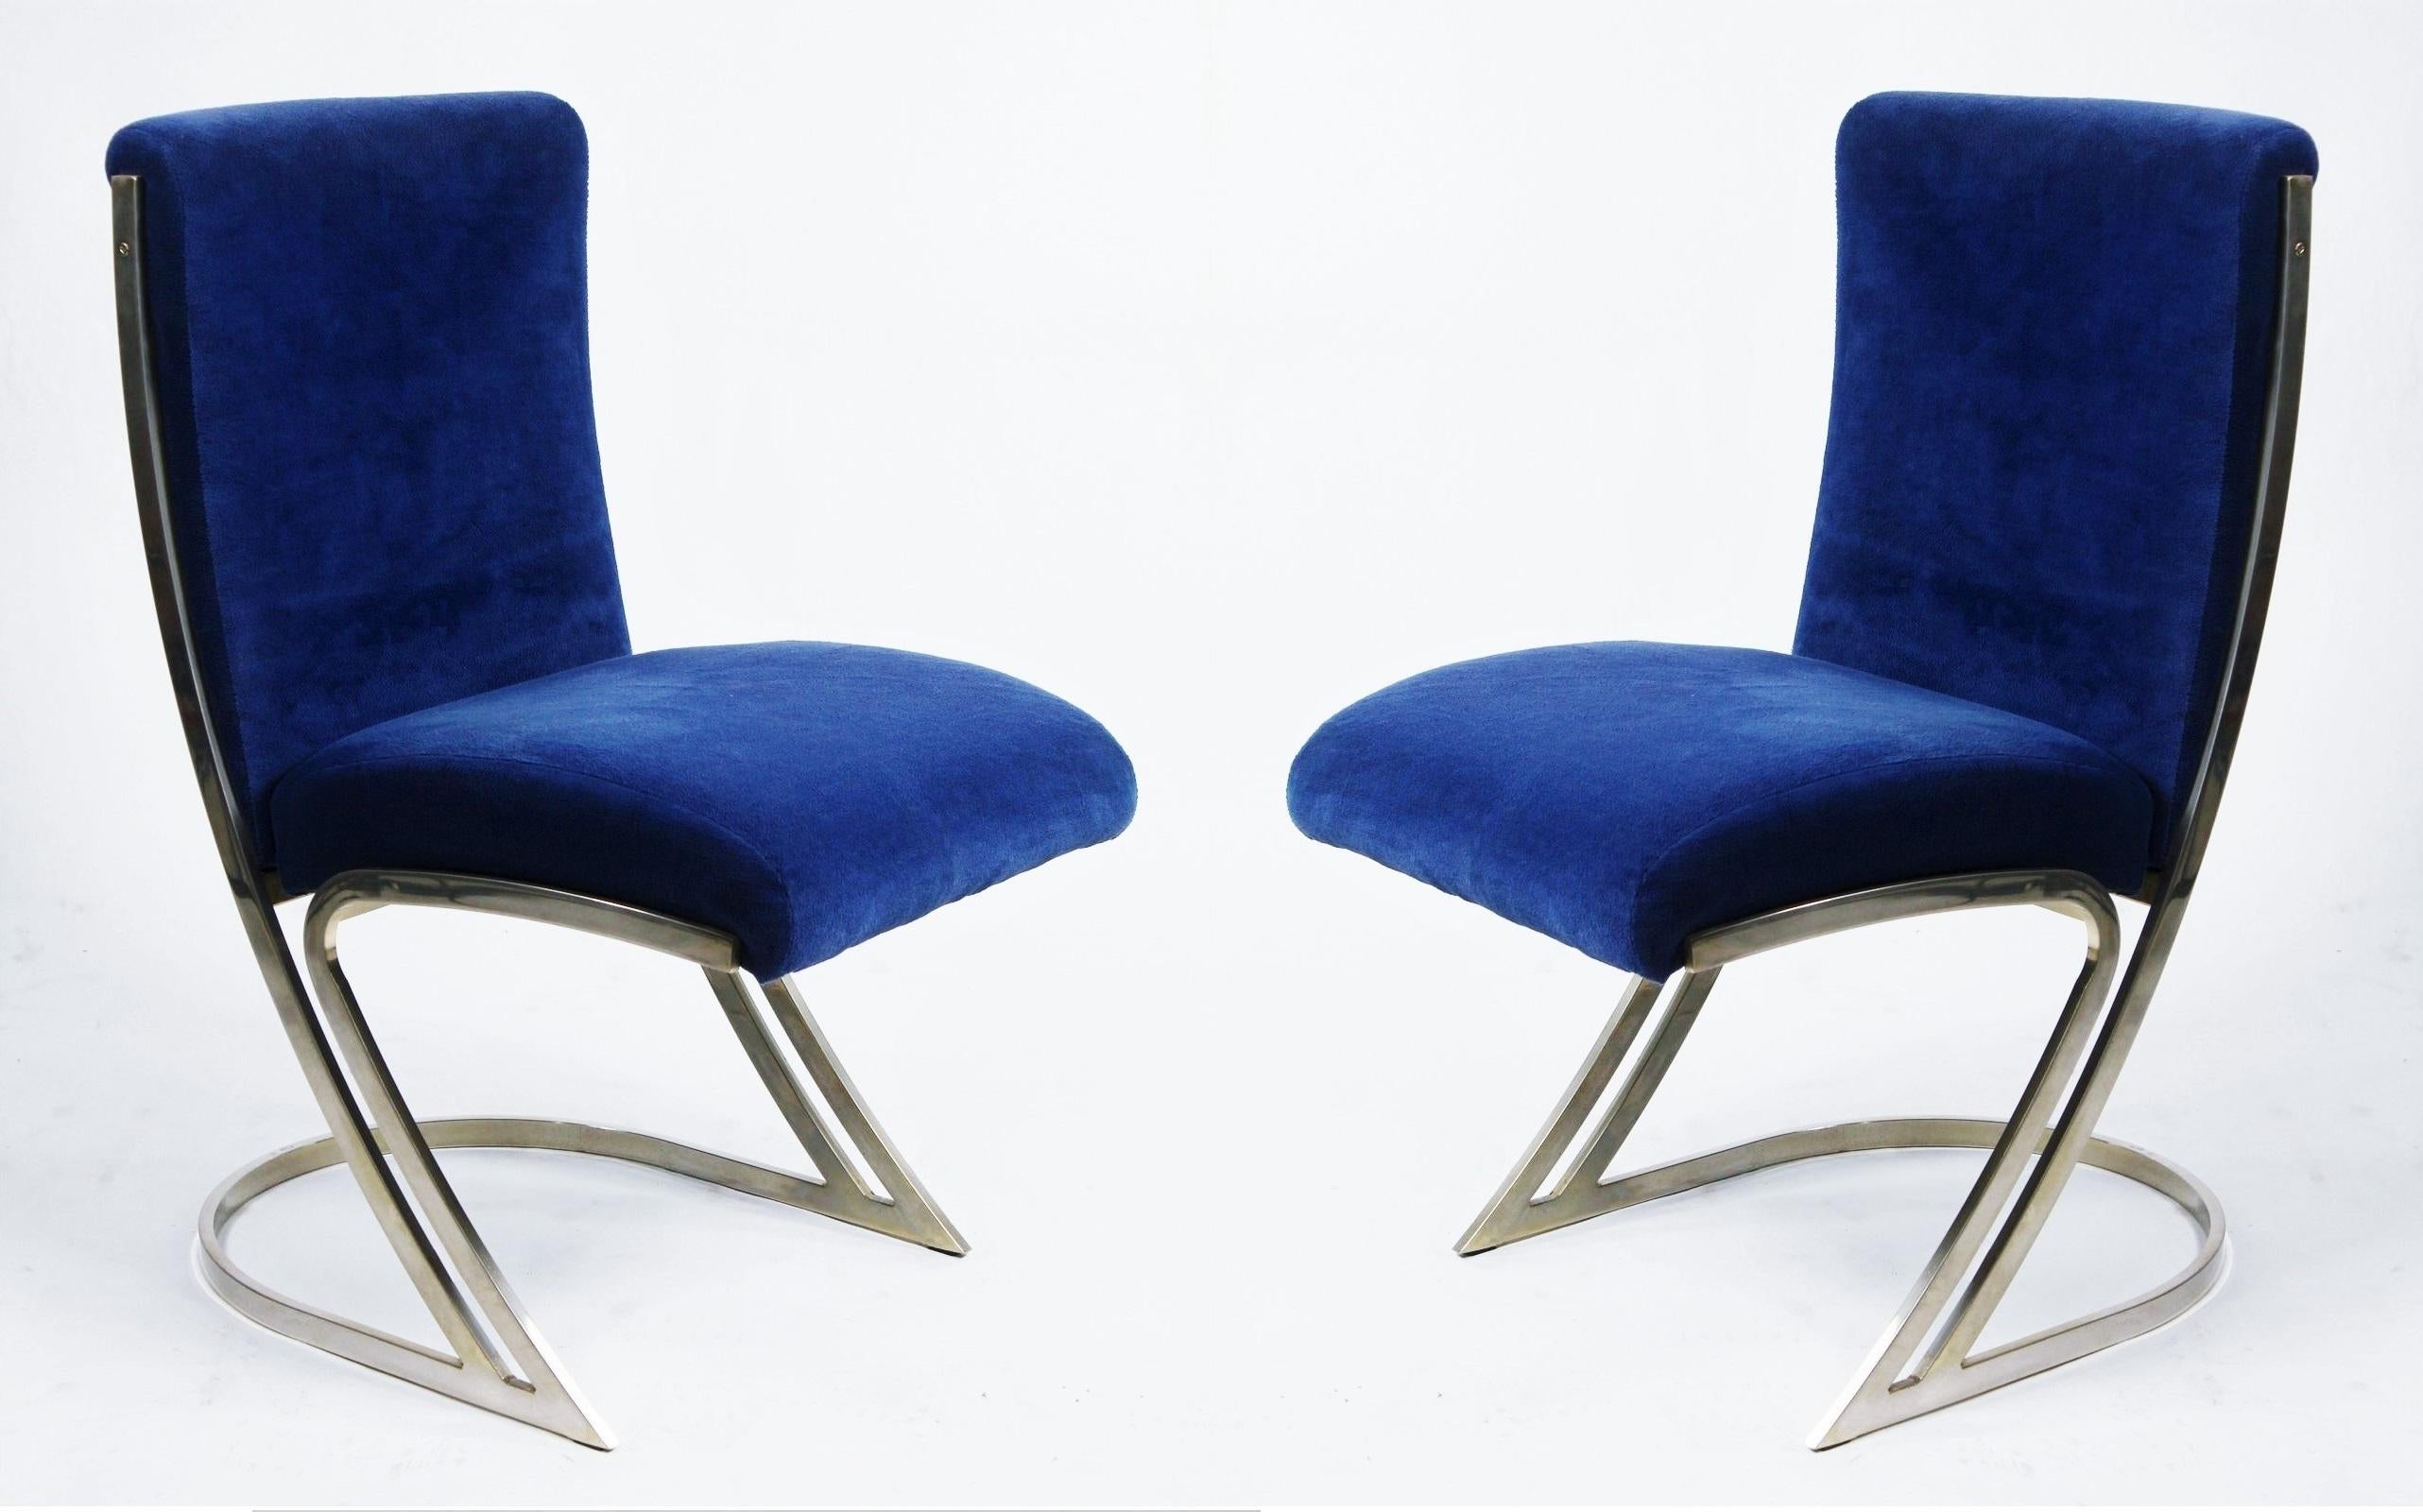 Superbe ensemble de six chaises de salle à manger de style Pierre Cardin, modernes et de style Régence du milieu du siècle dernier. Ce meuble est doté d'un rembourrage en velours bleu, soutenu par un cadre sculptural en forme de 